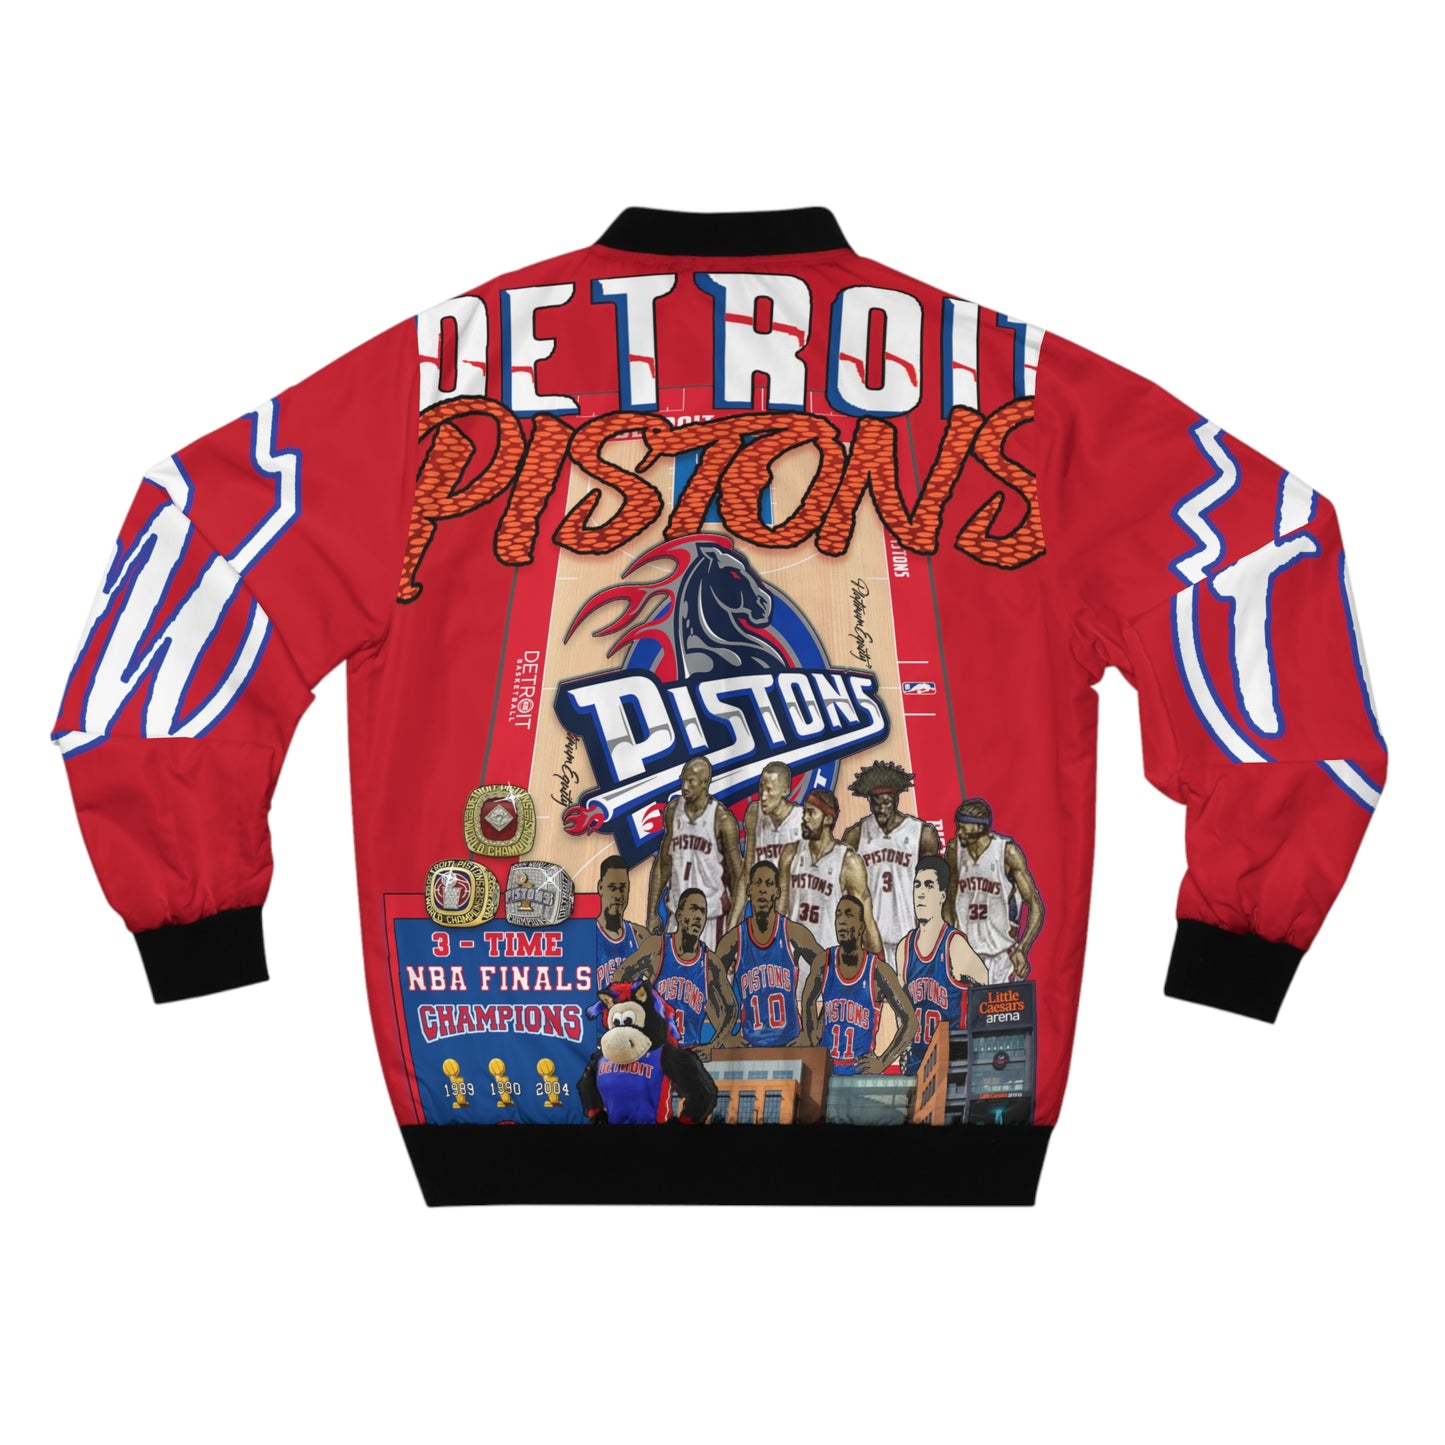 Detroit Pistons Classic